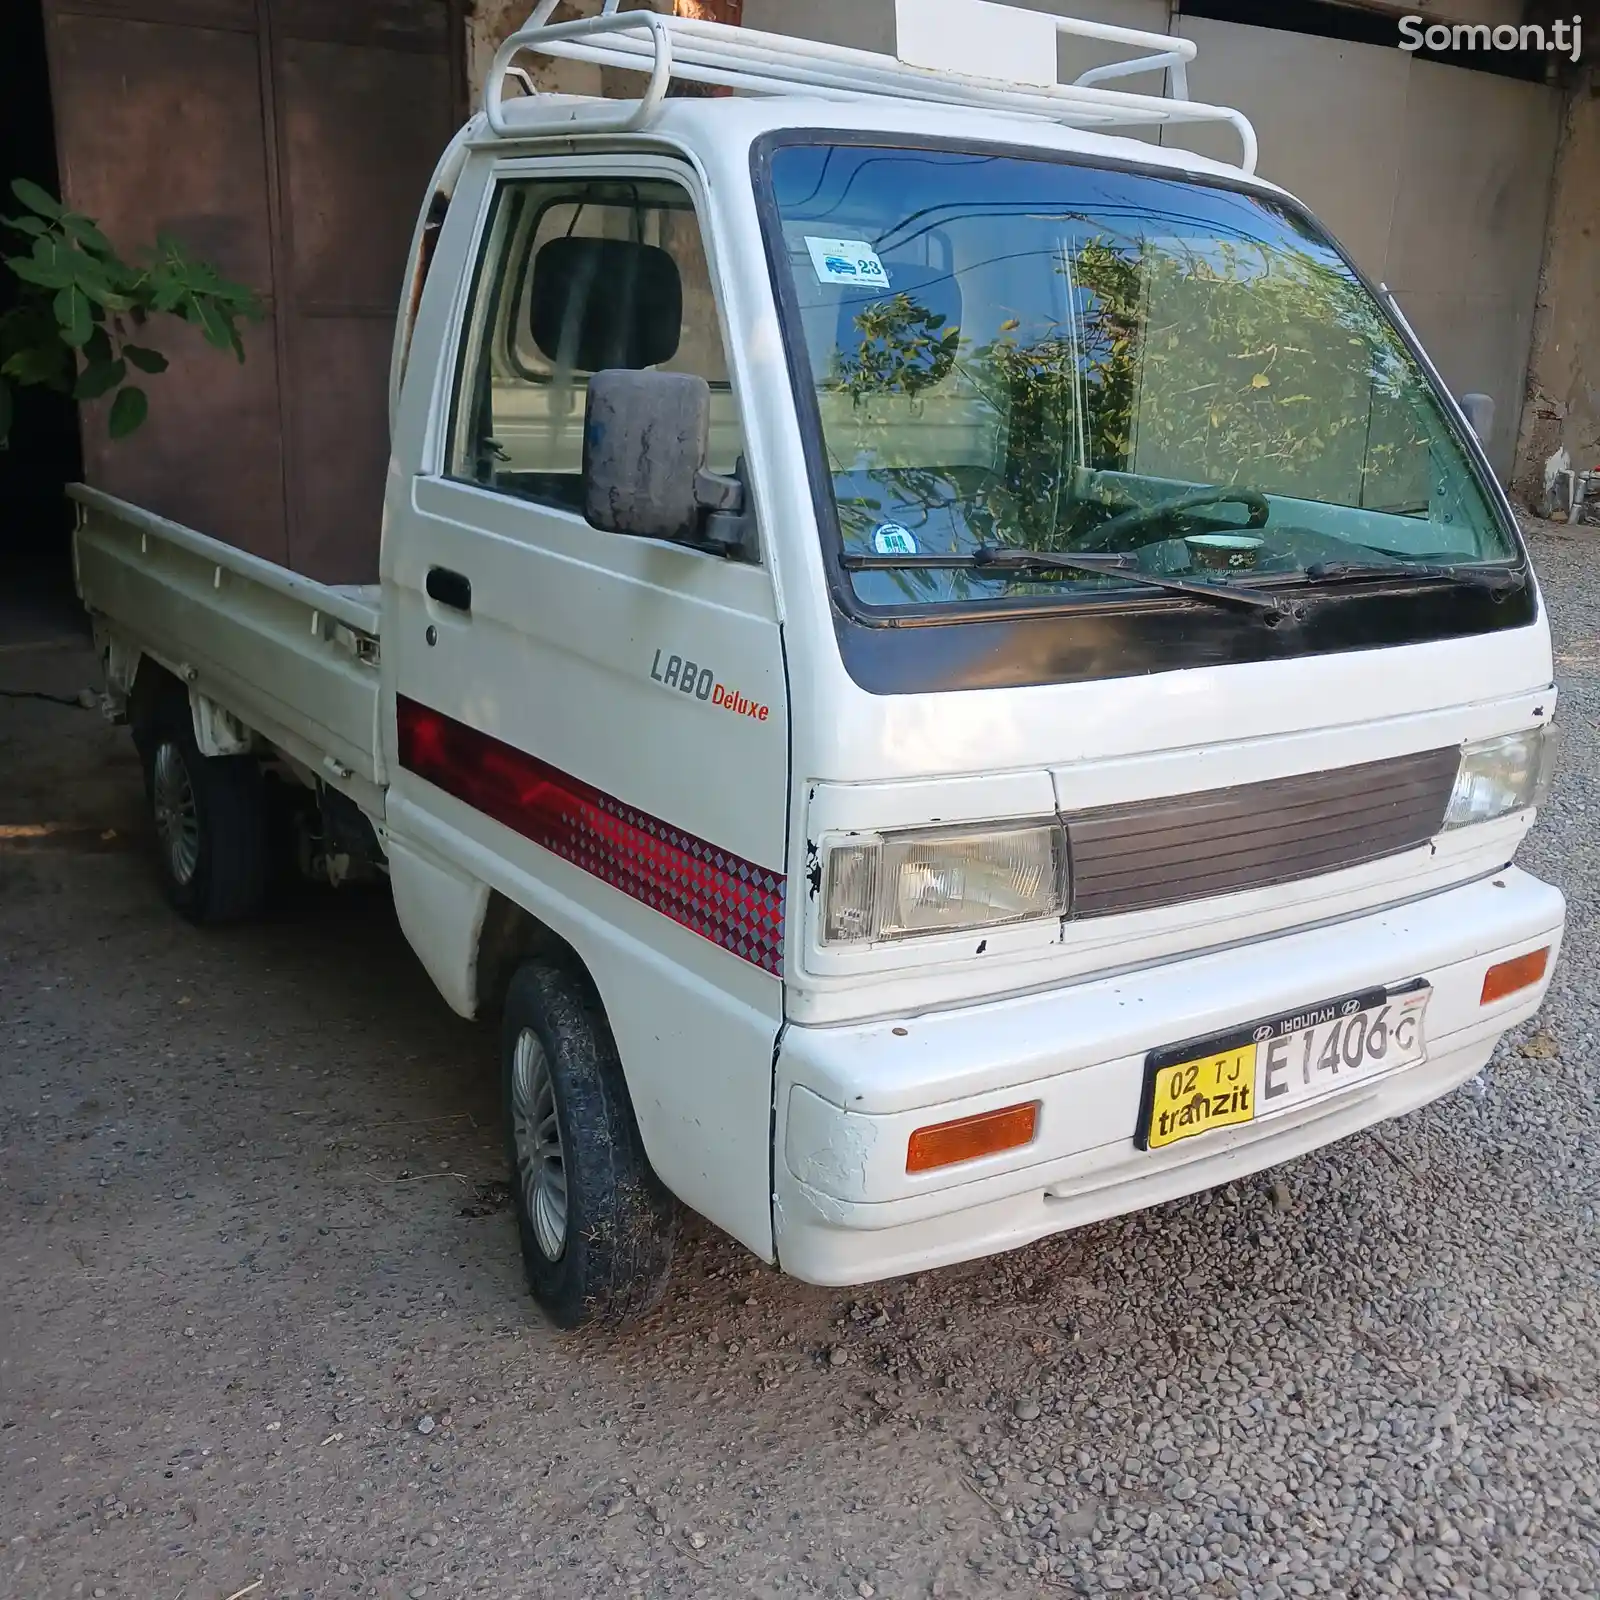 Бортовой автомобиль Daewoo Labo, 1995-1